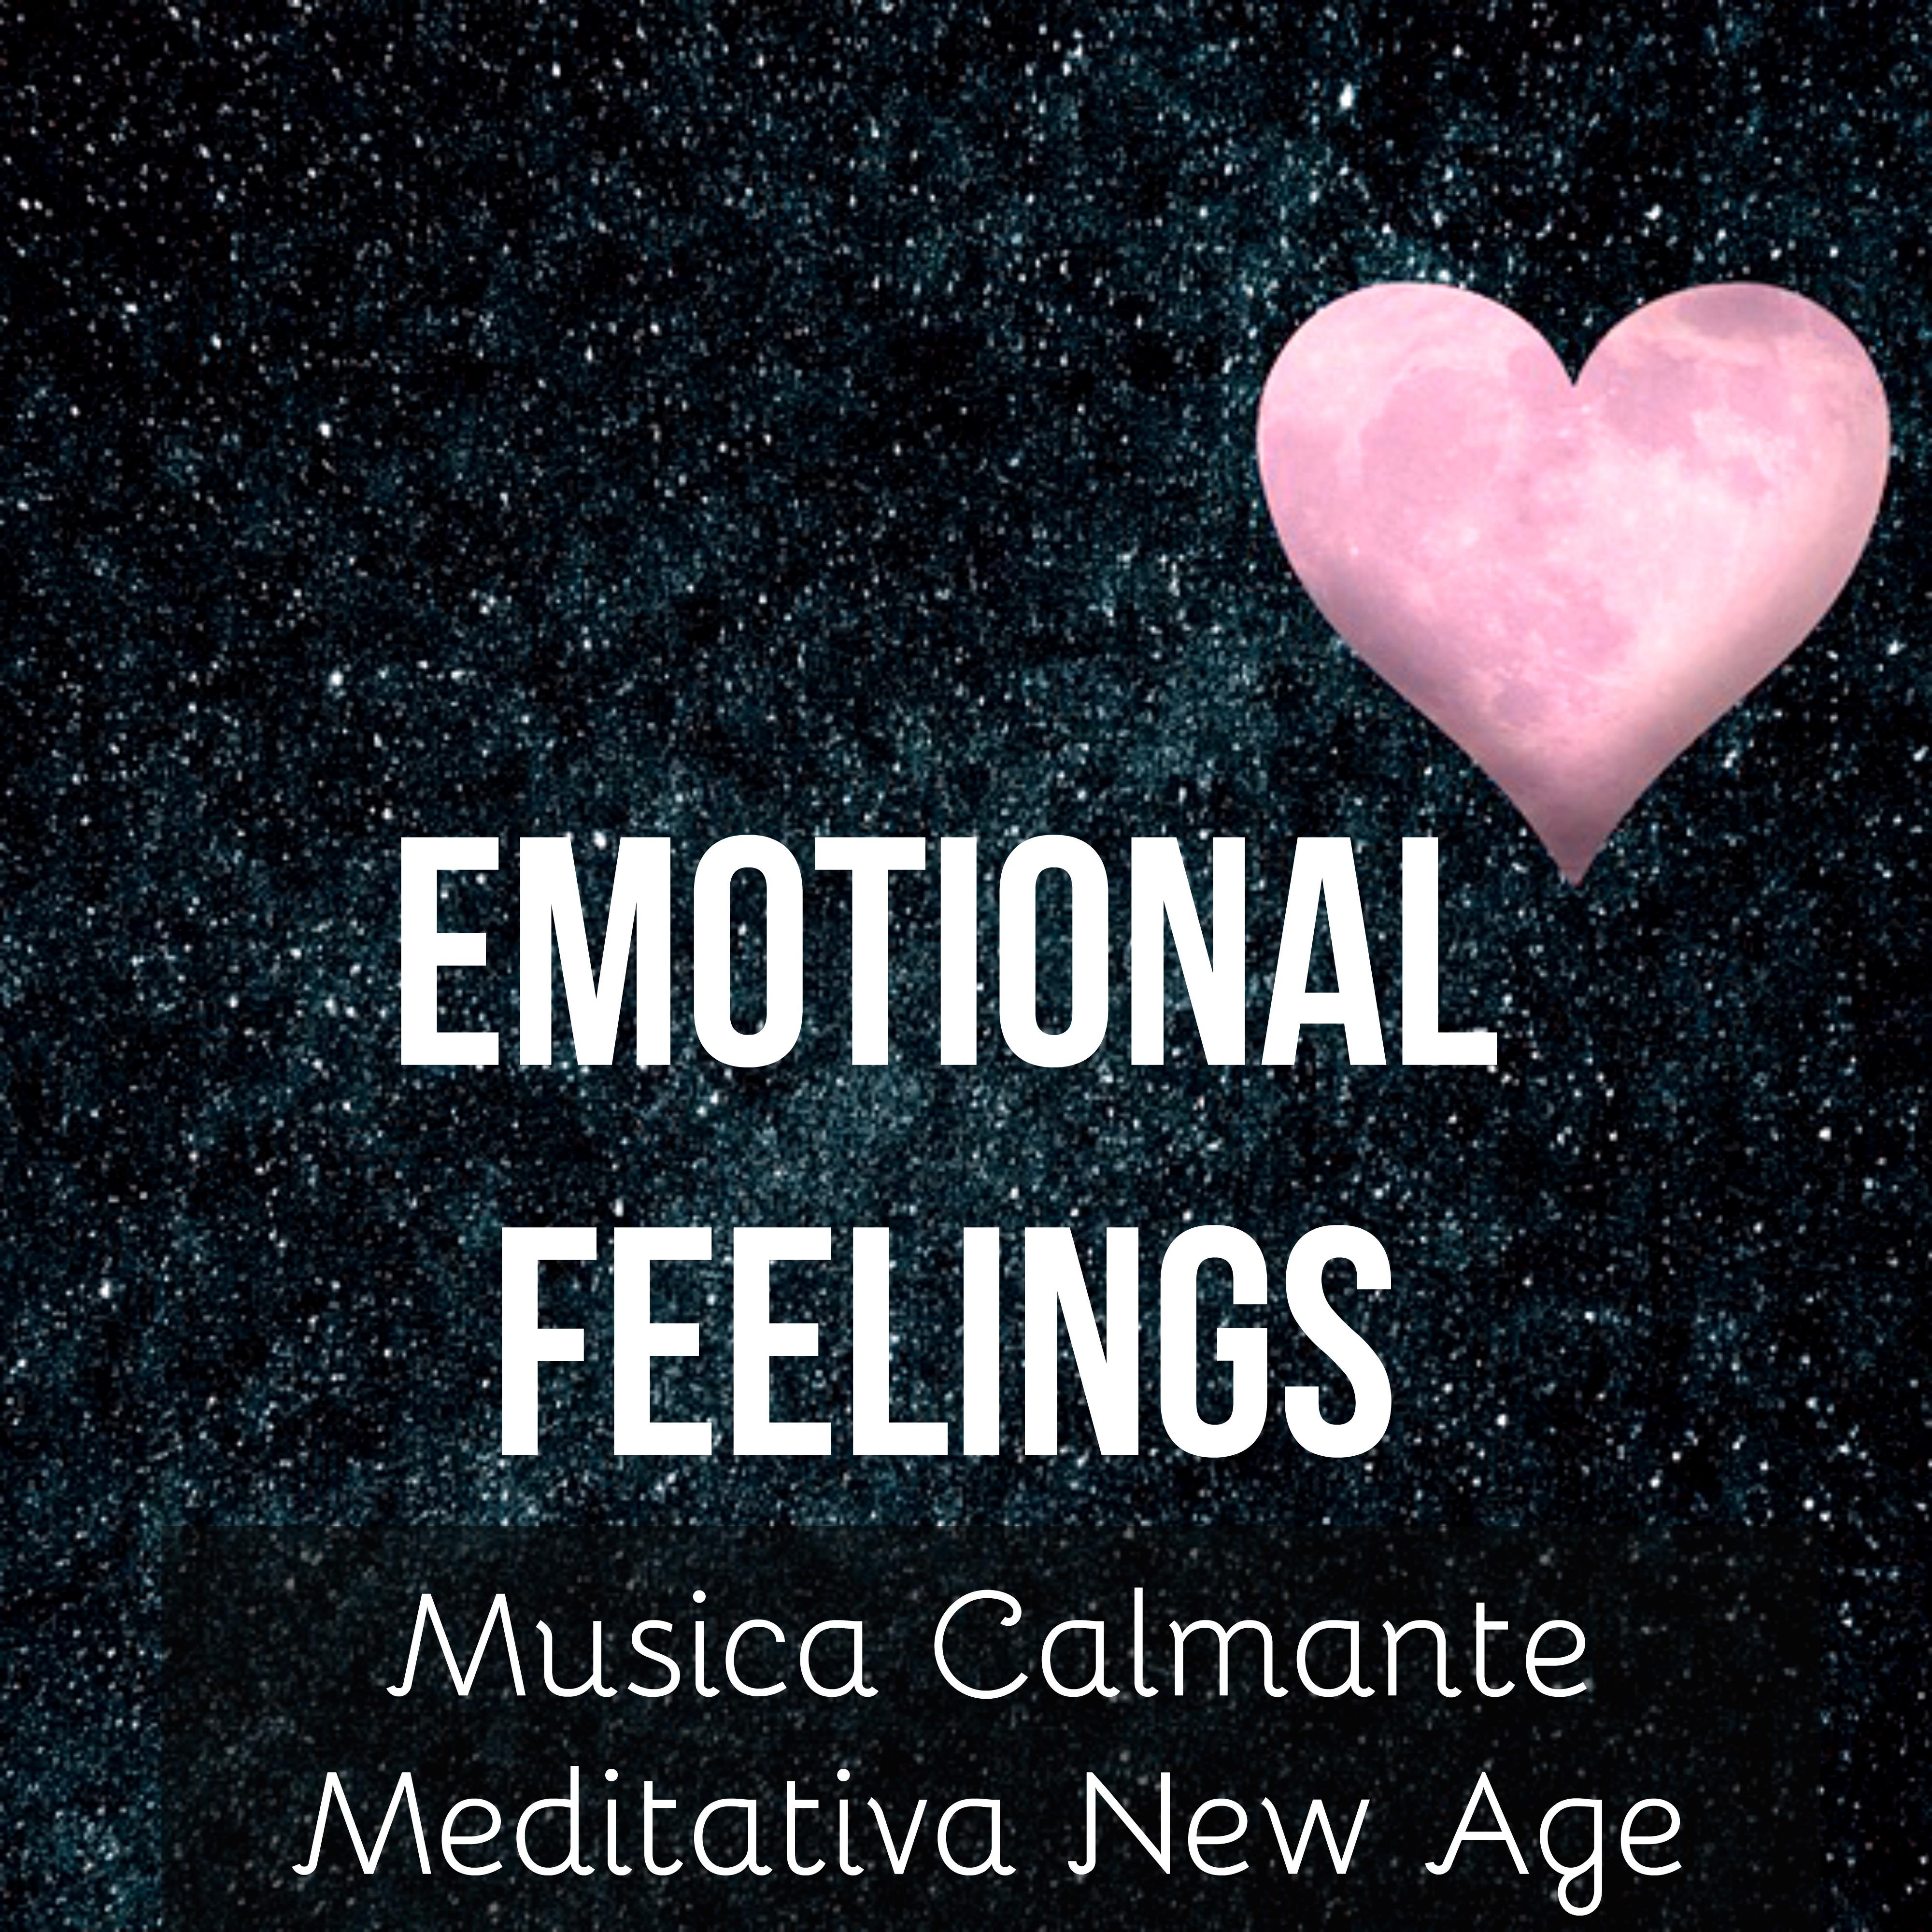 Emotional Feelings - Musica Calmante Meditativa New Age per Esercizi Rilassamento Terapia Zen Aumentare la Concentrazione con Suoni della Natura Strumentali